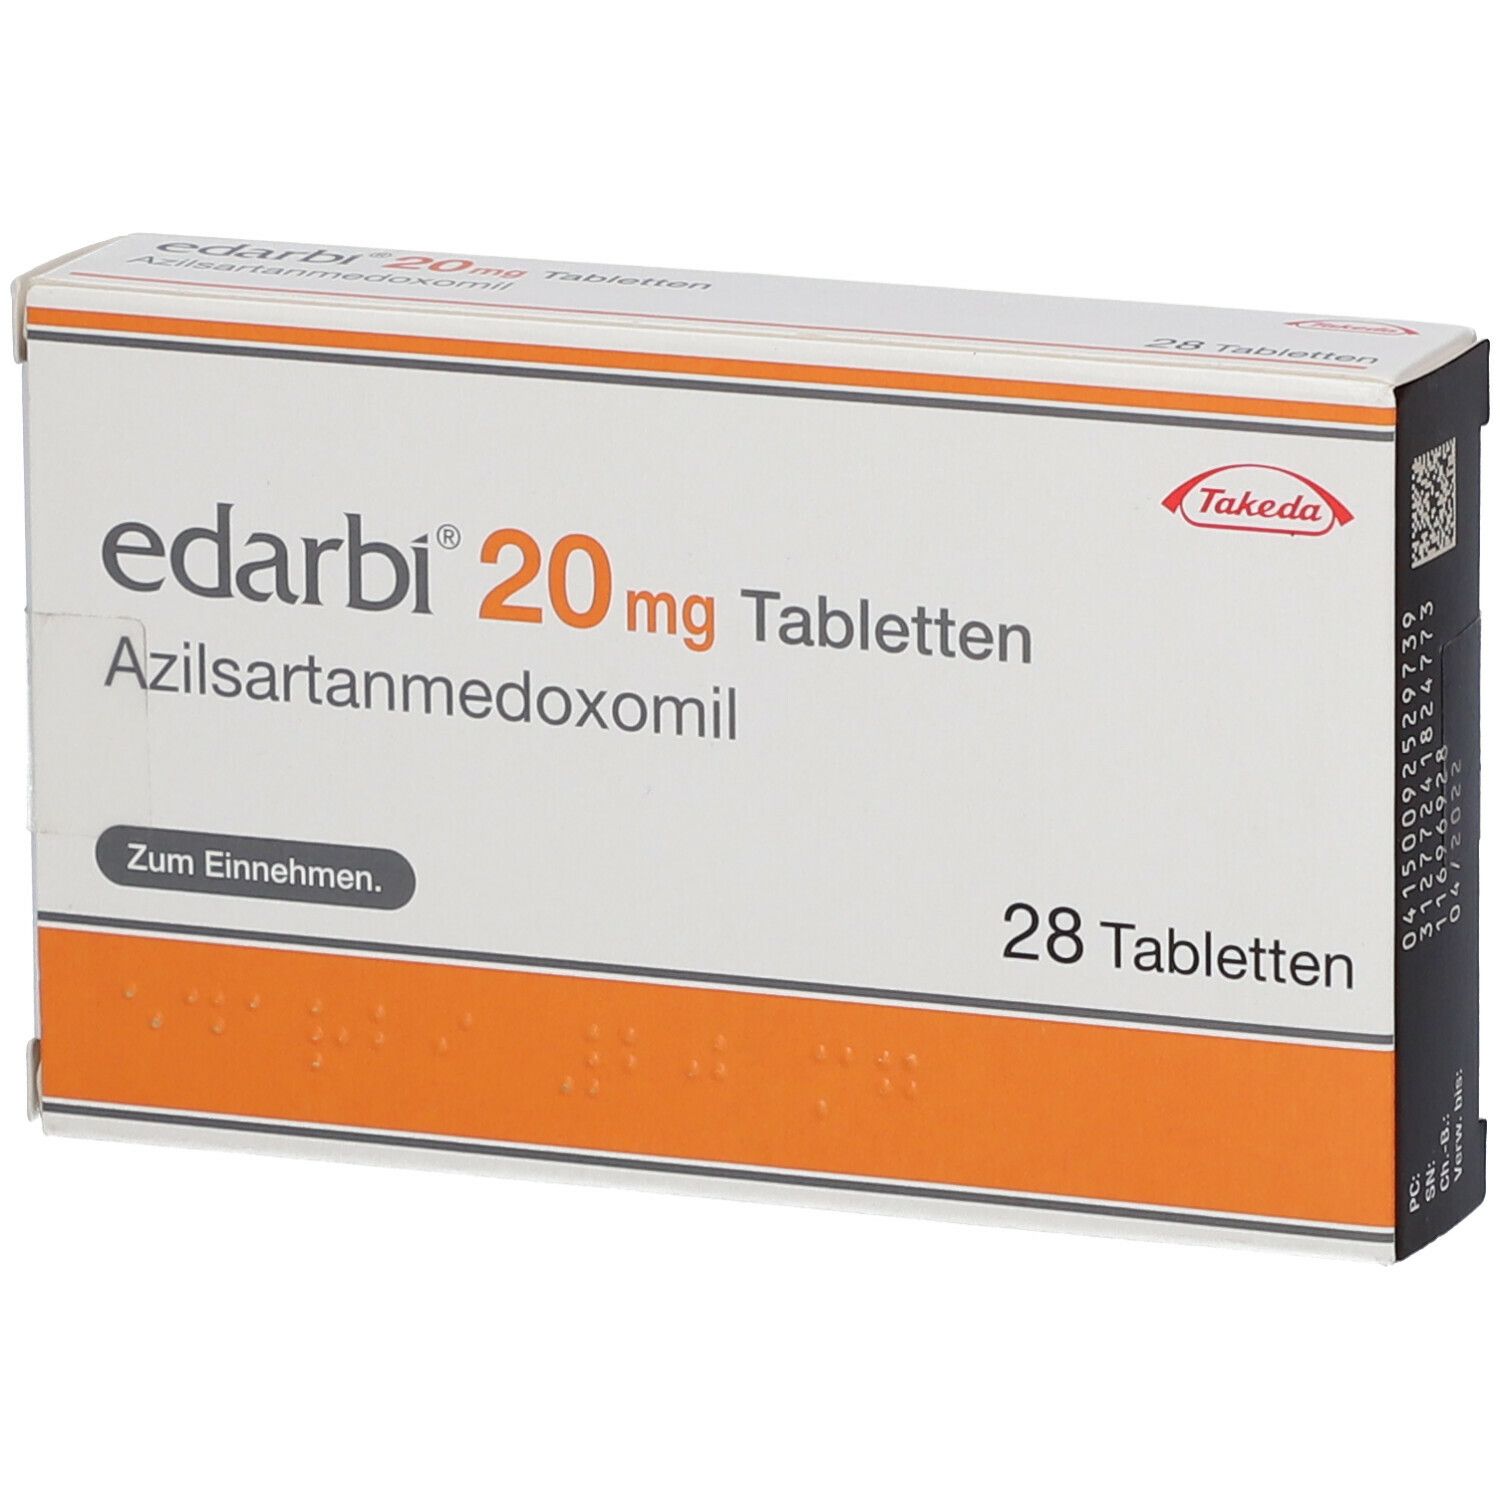 Edarbi® 20 mg